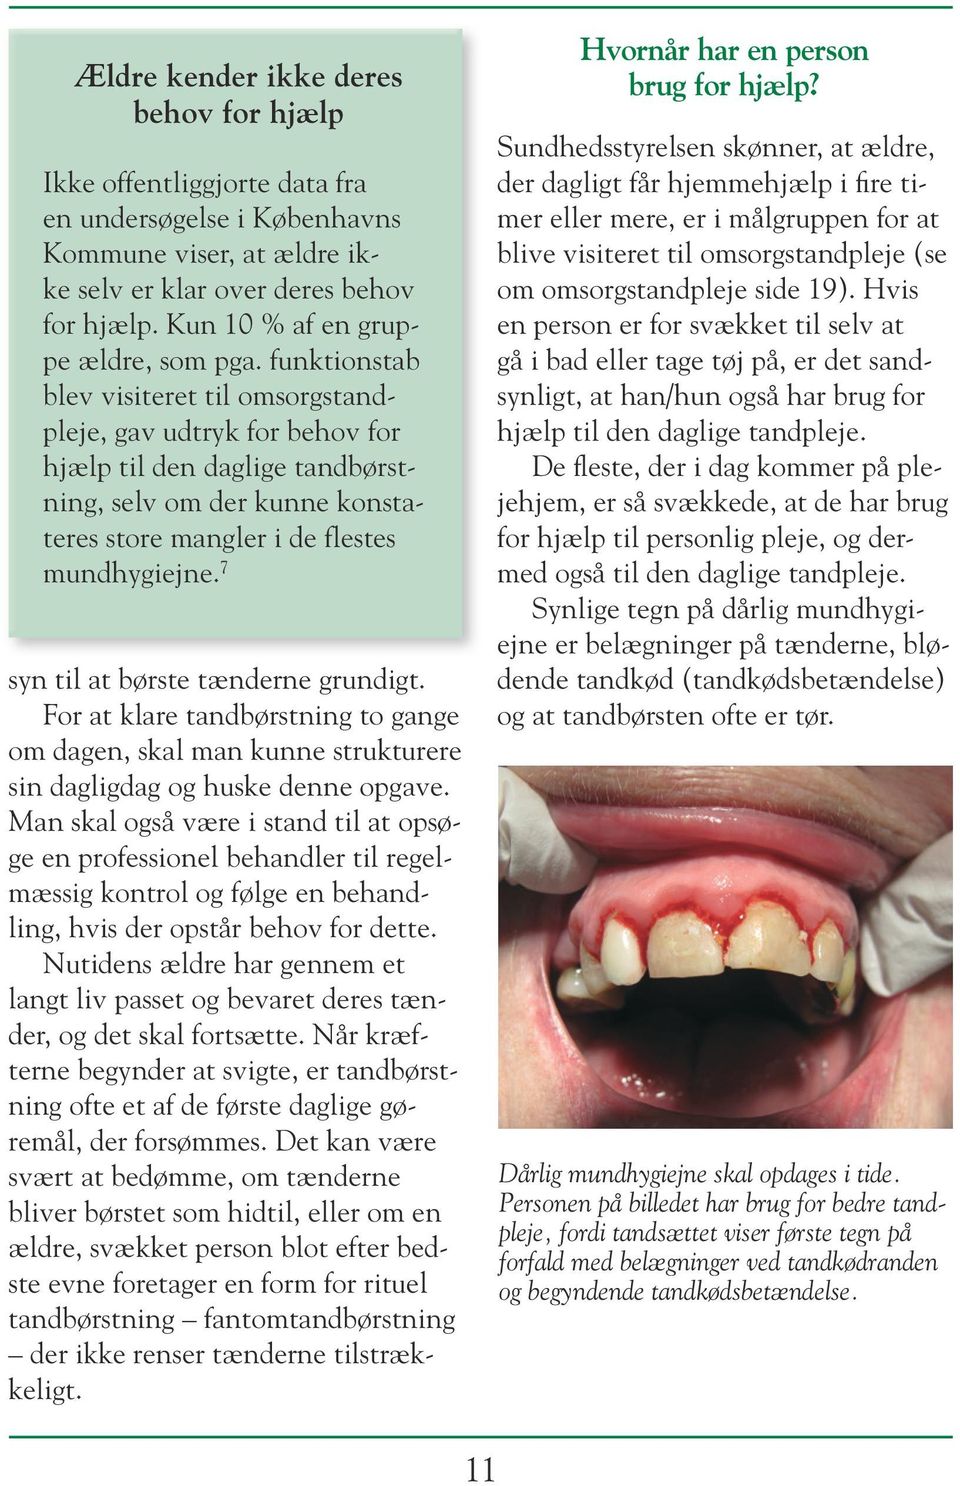 Sunde tænder hele livet - PDF Free Download